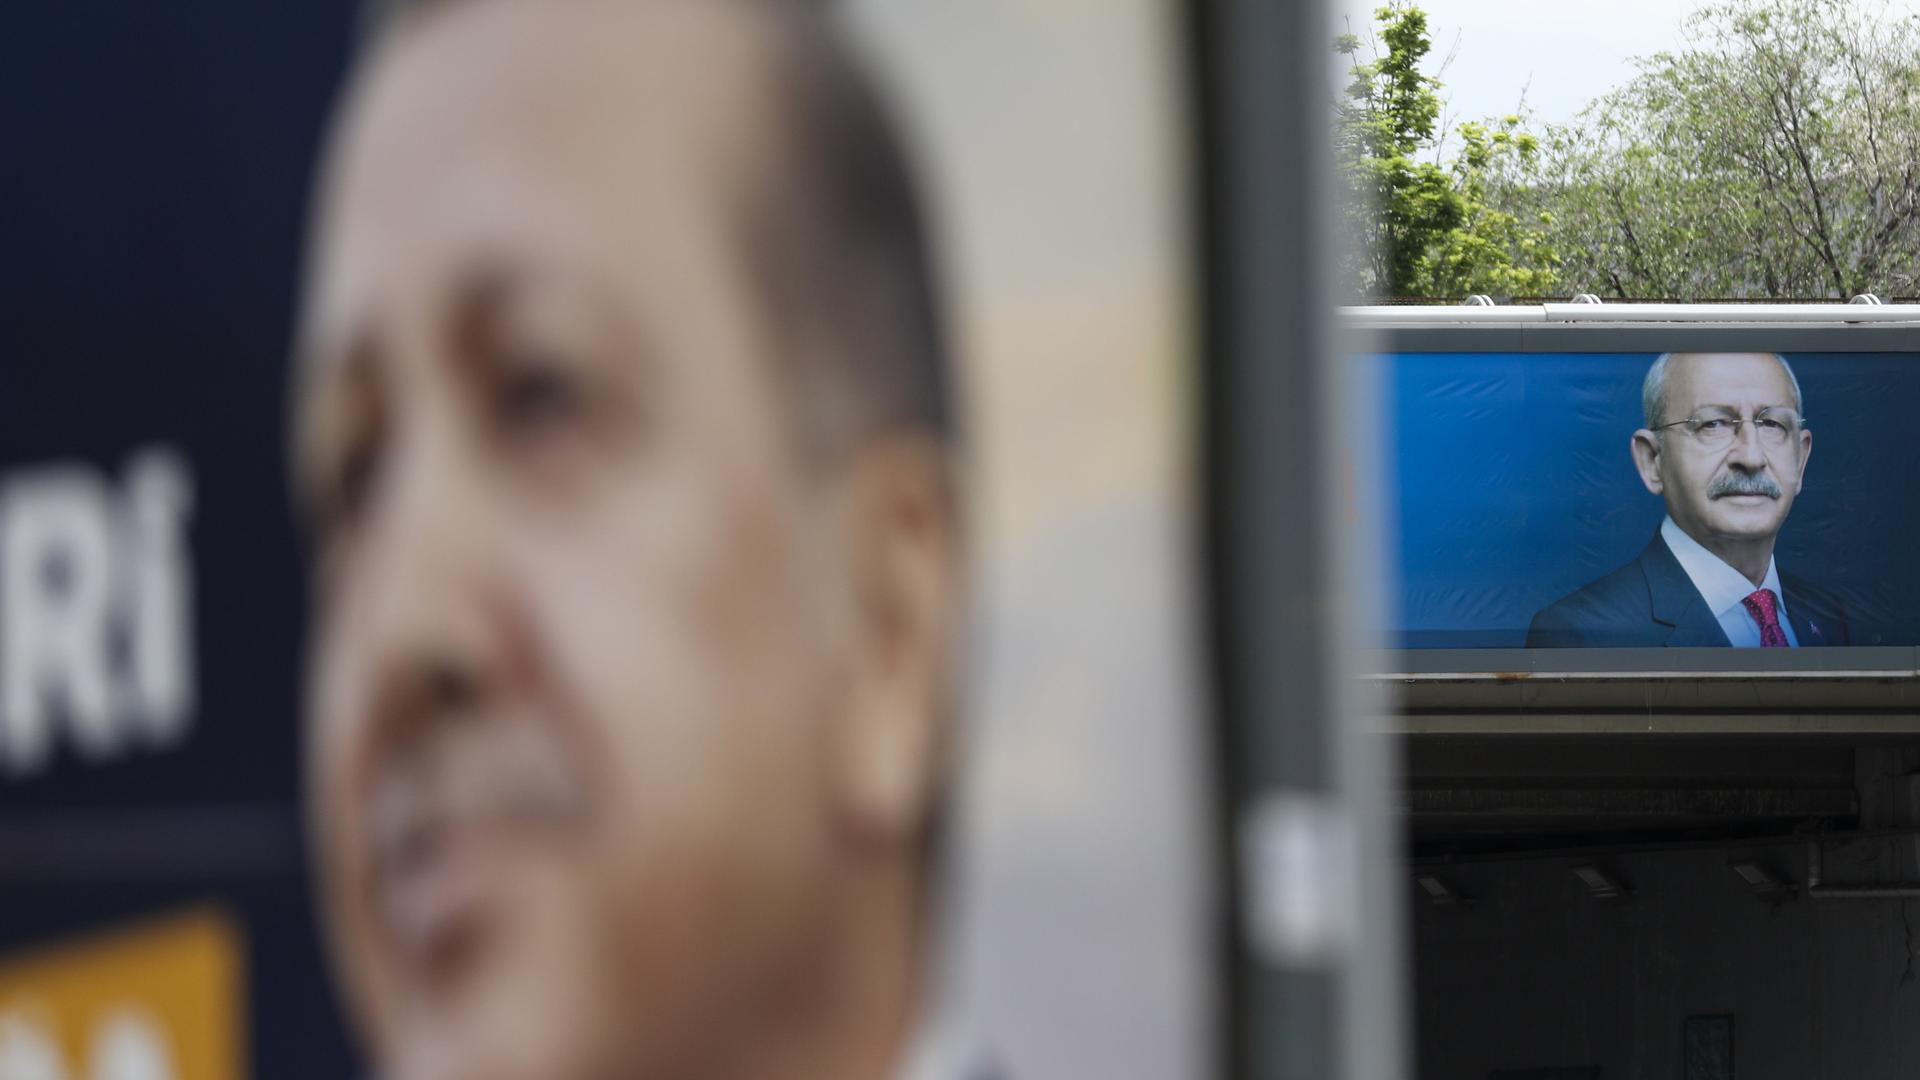 Stichwahl - Türkei entscheidet über Präsidenten